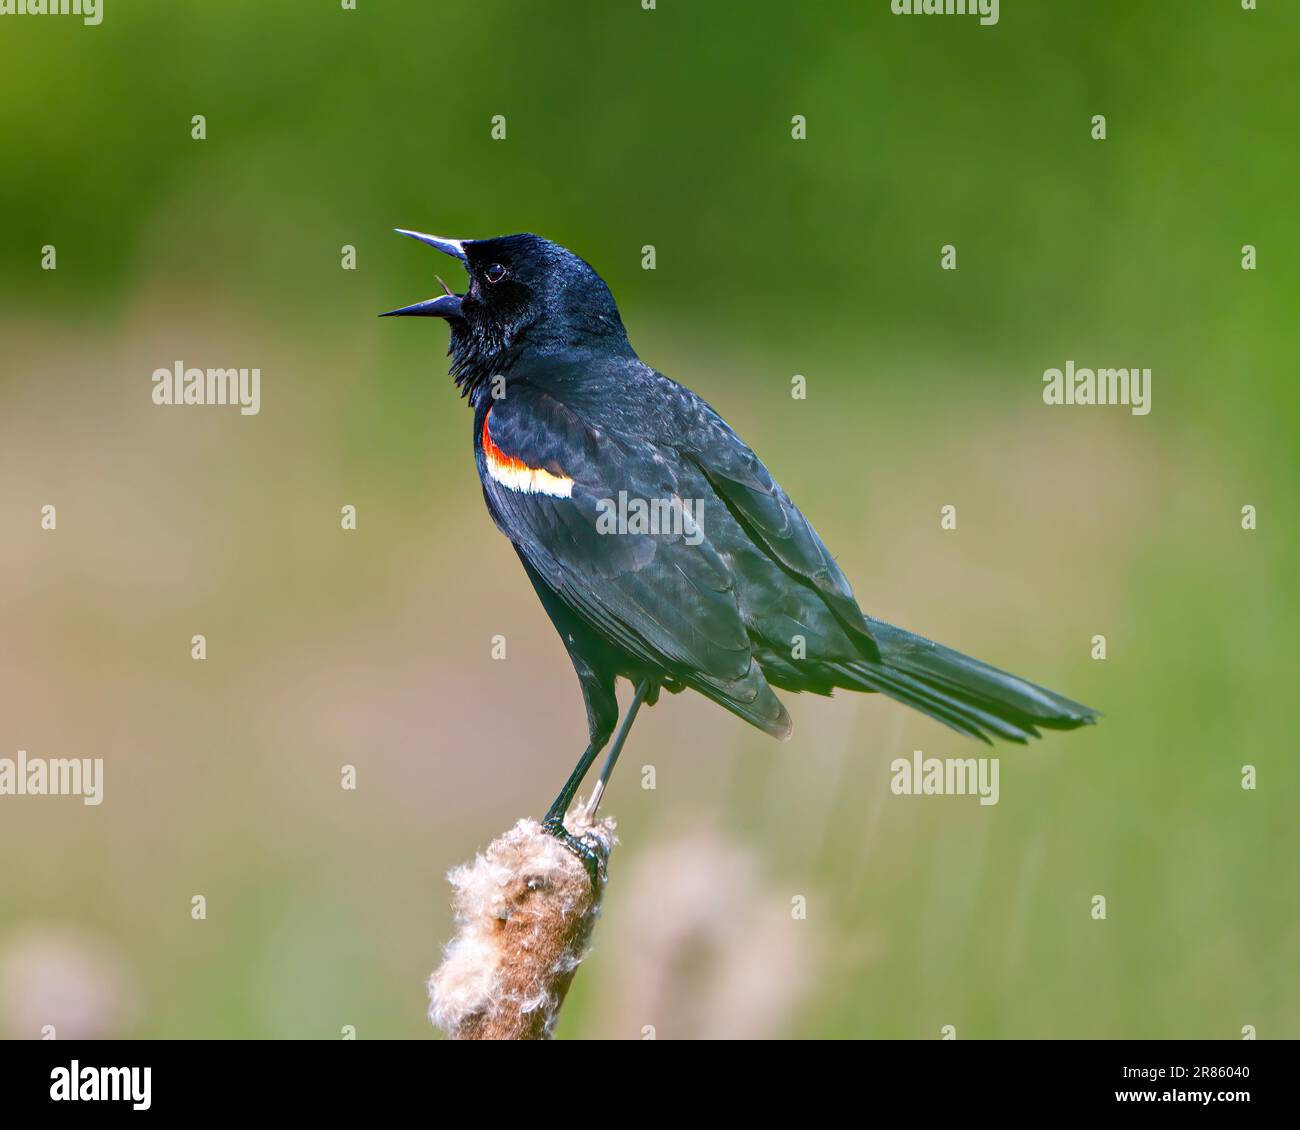 Red-Winged Blackbird, männliche Nahaufnahme, hoch oben auf einer Kattelpflanze mit unscharfem grünen Hintergrund in seiner Umgebung und Umgebung. Stockfoto